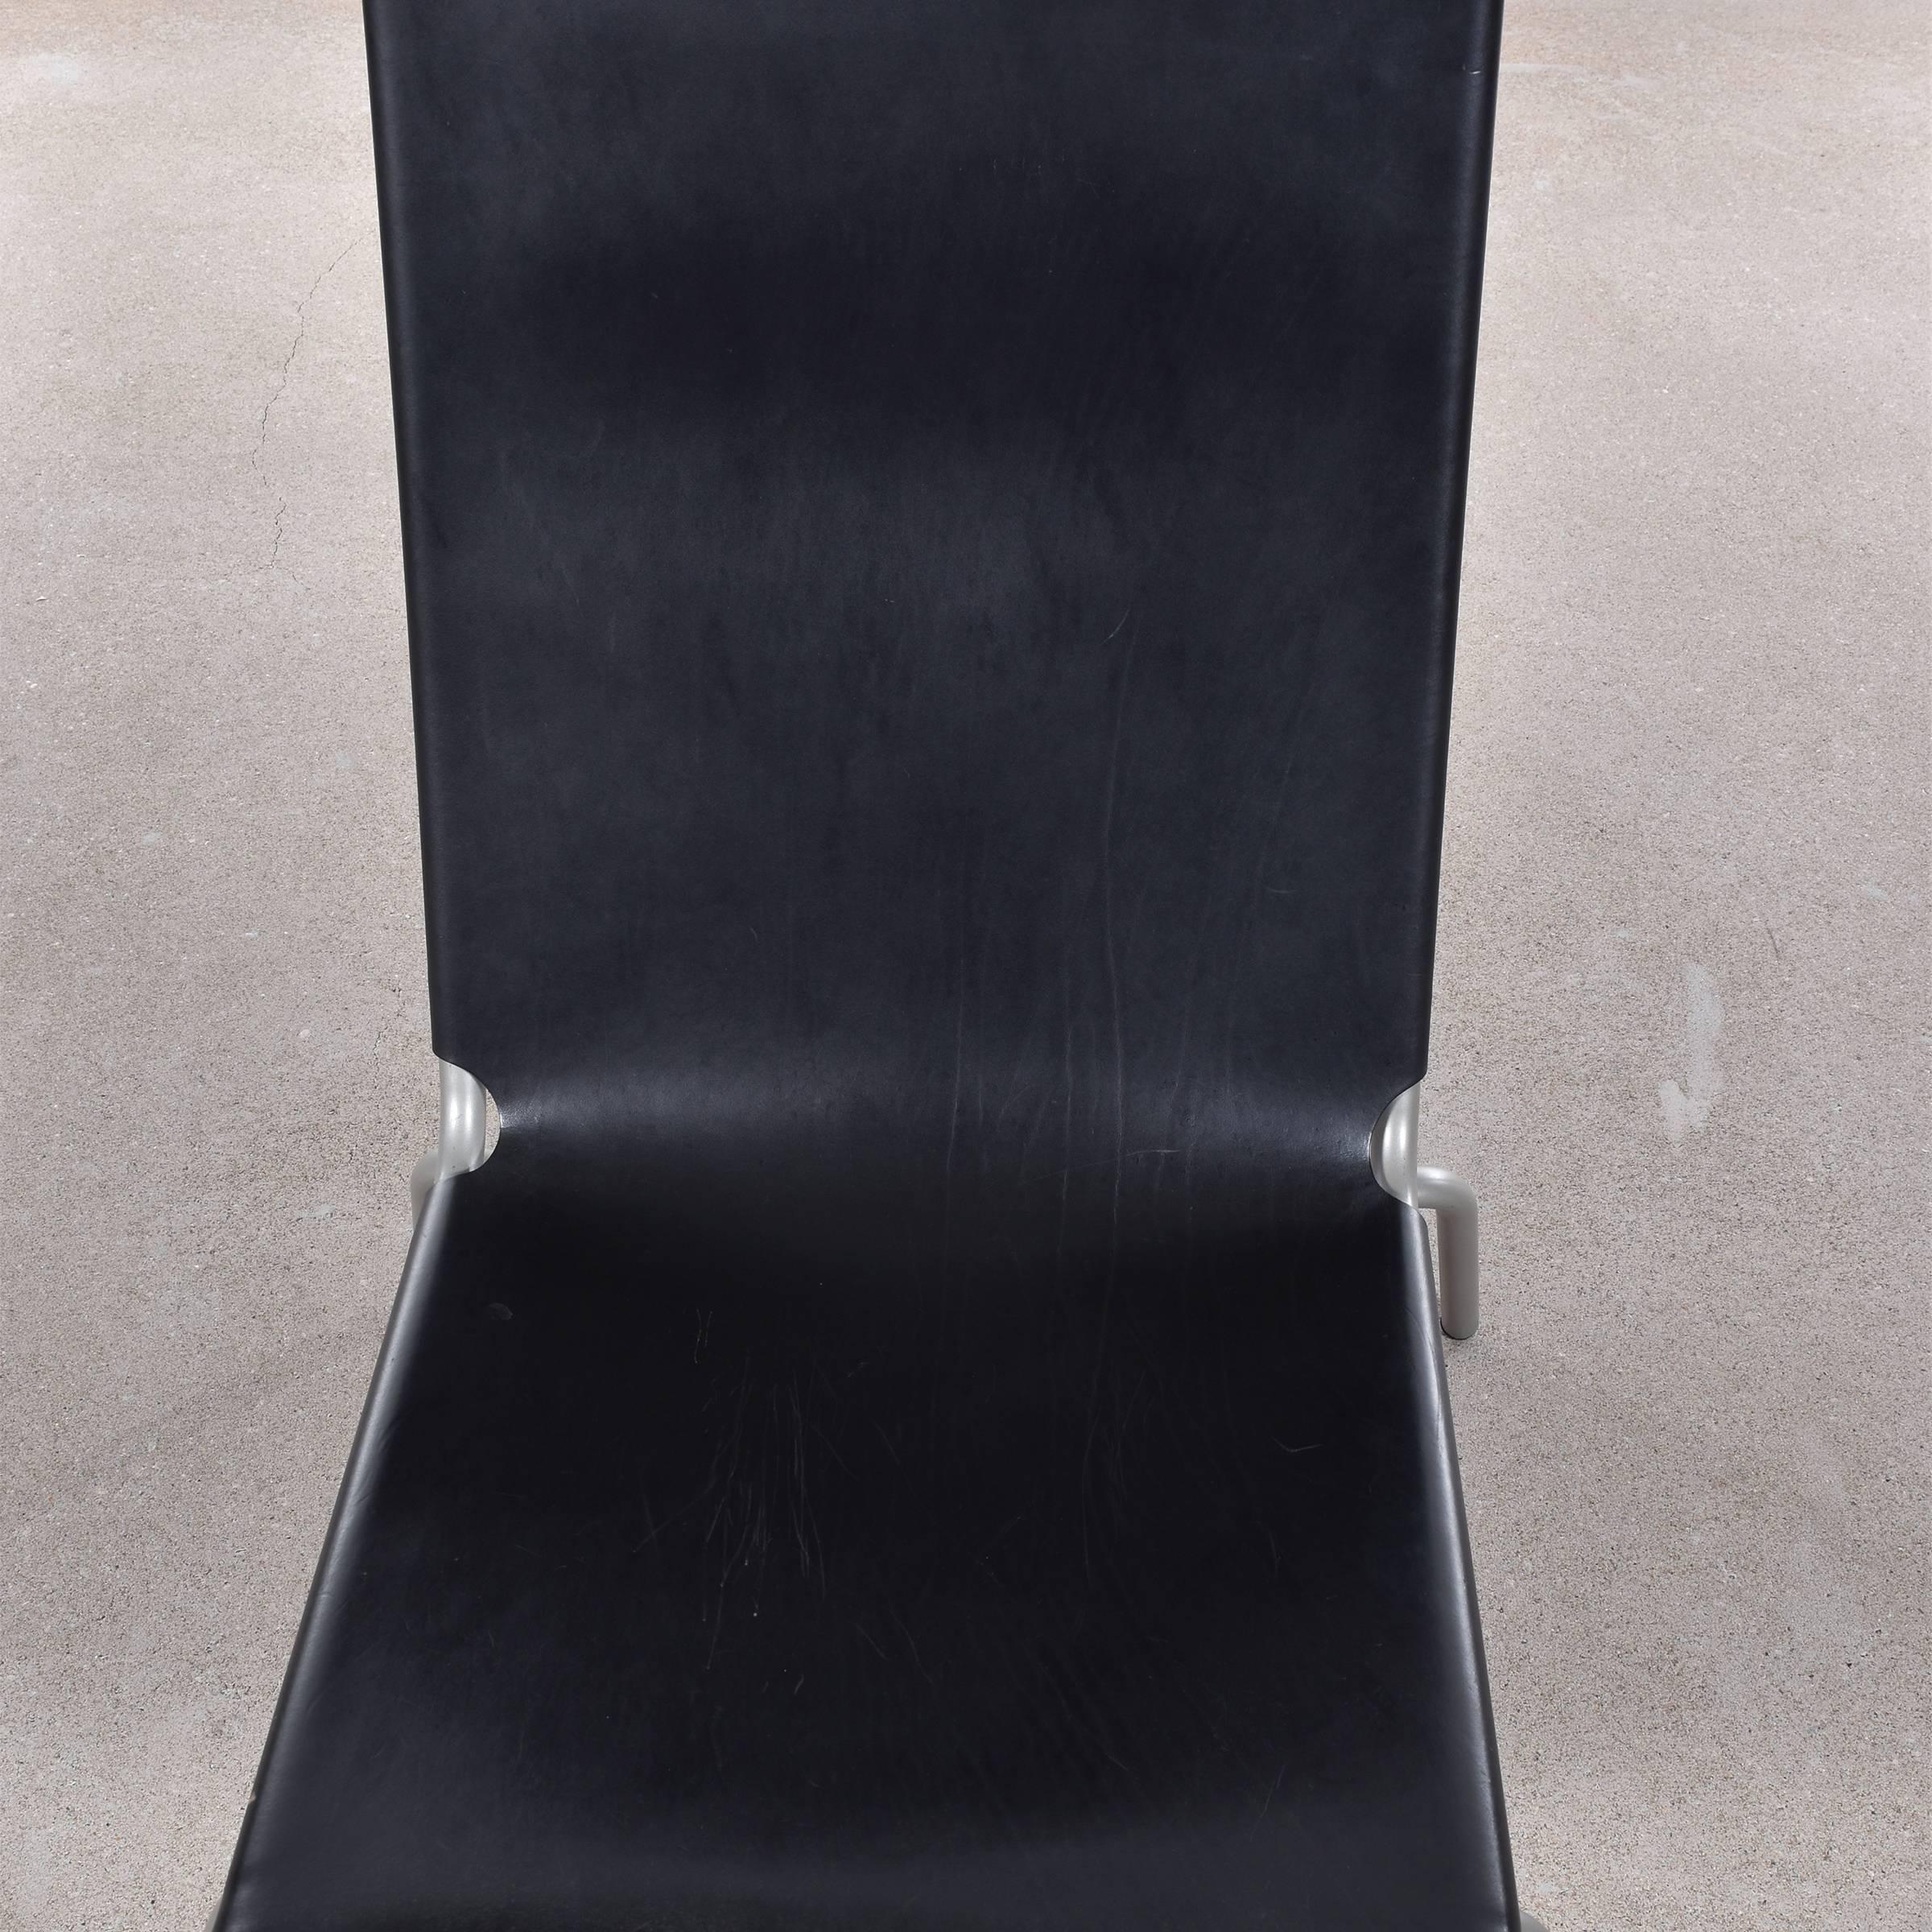 Leather Fabiaan Van Severen Lounge Chair, Belgium, 1998